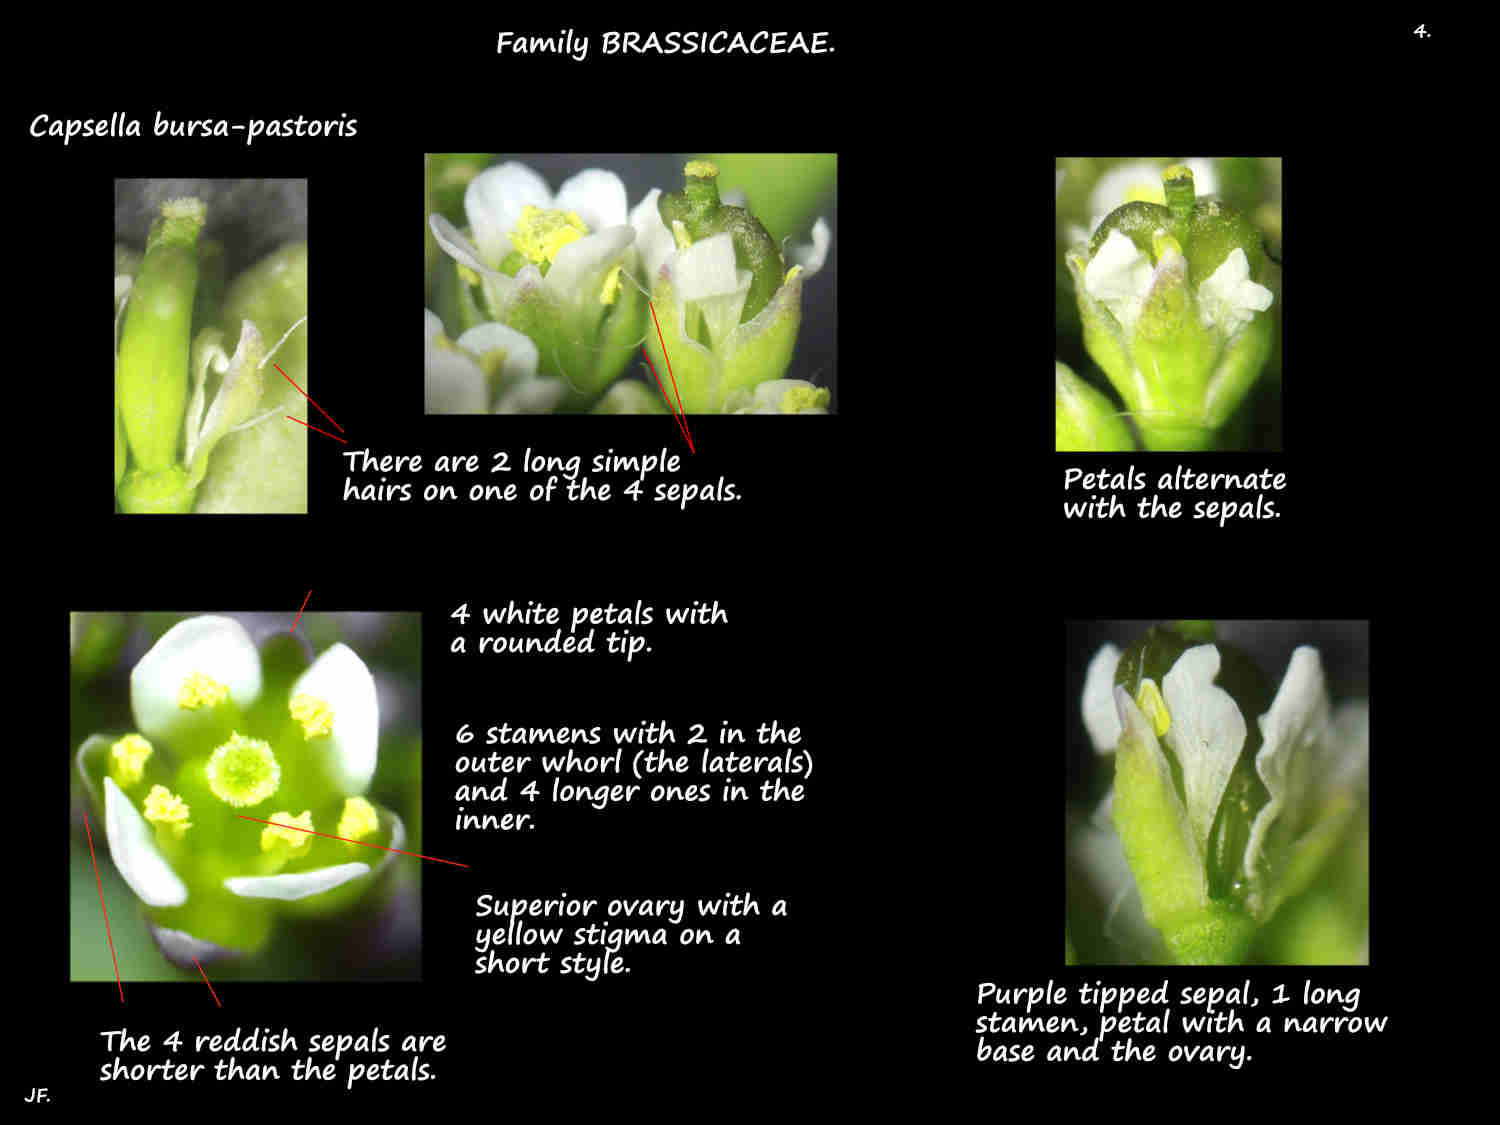 4 Capsella bursa-pastoris sepal hairs & petals